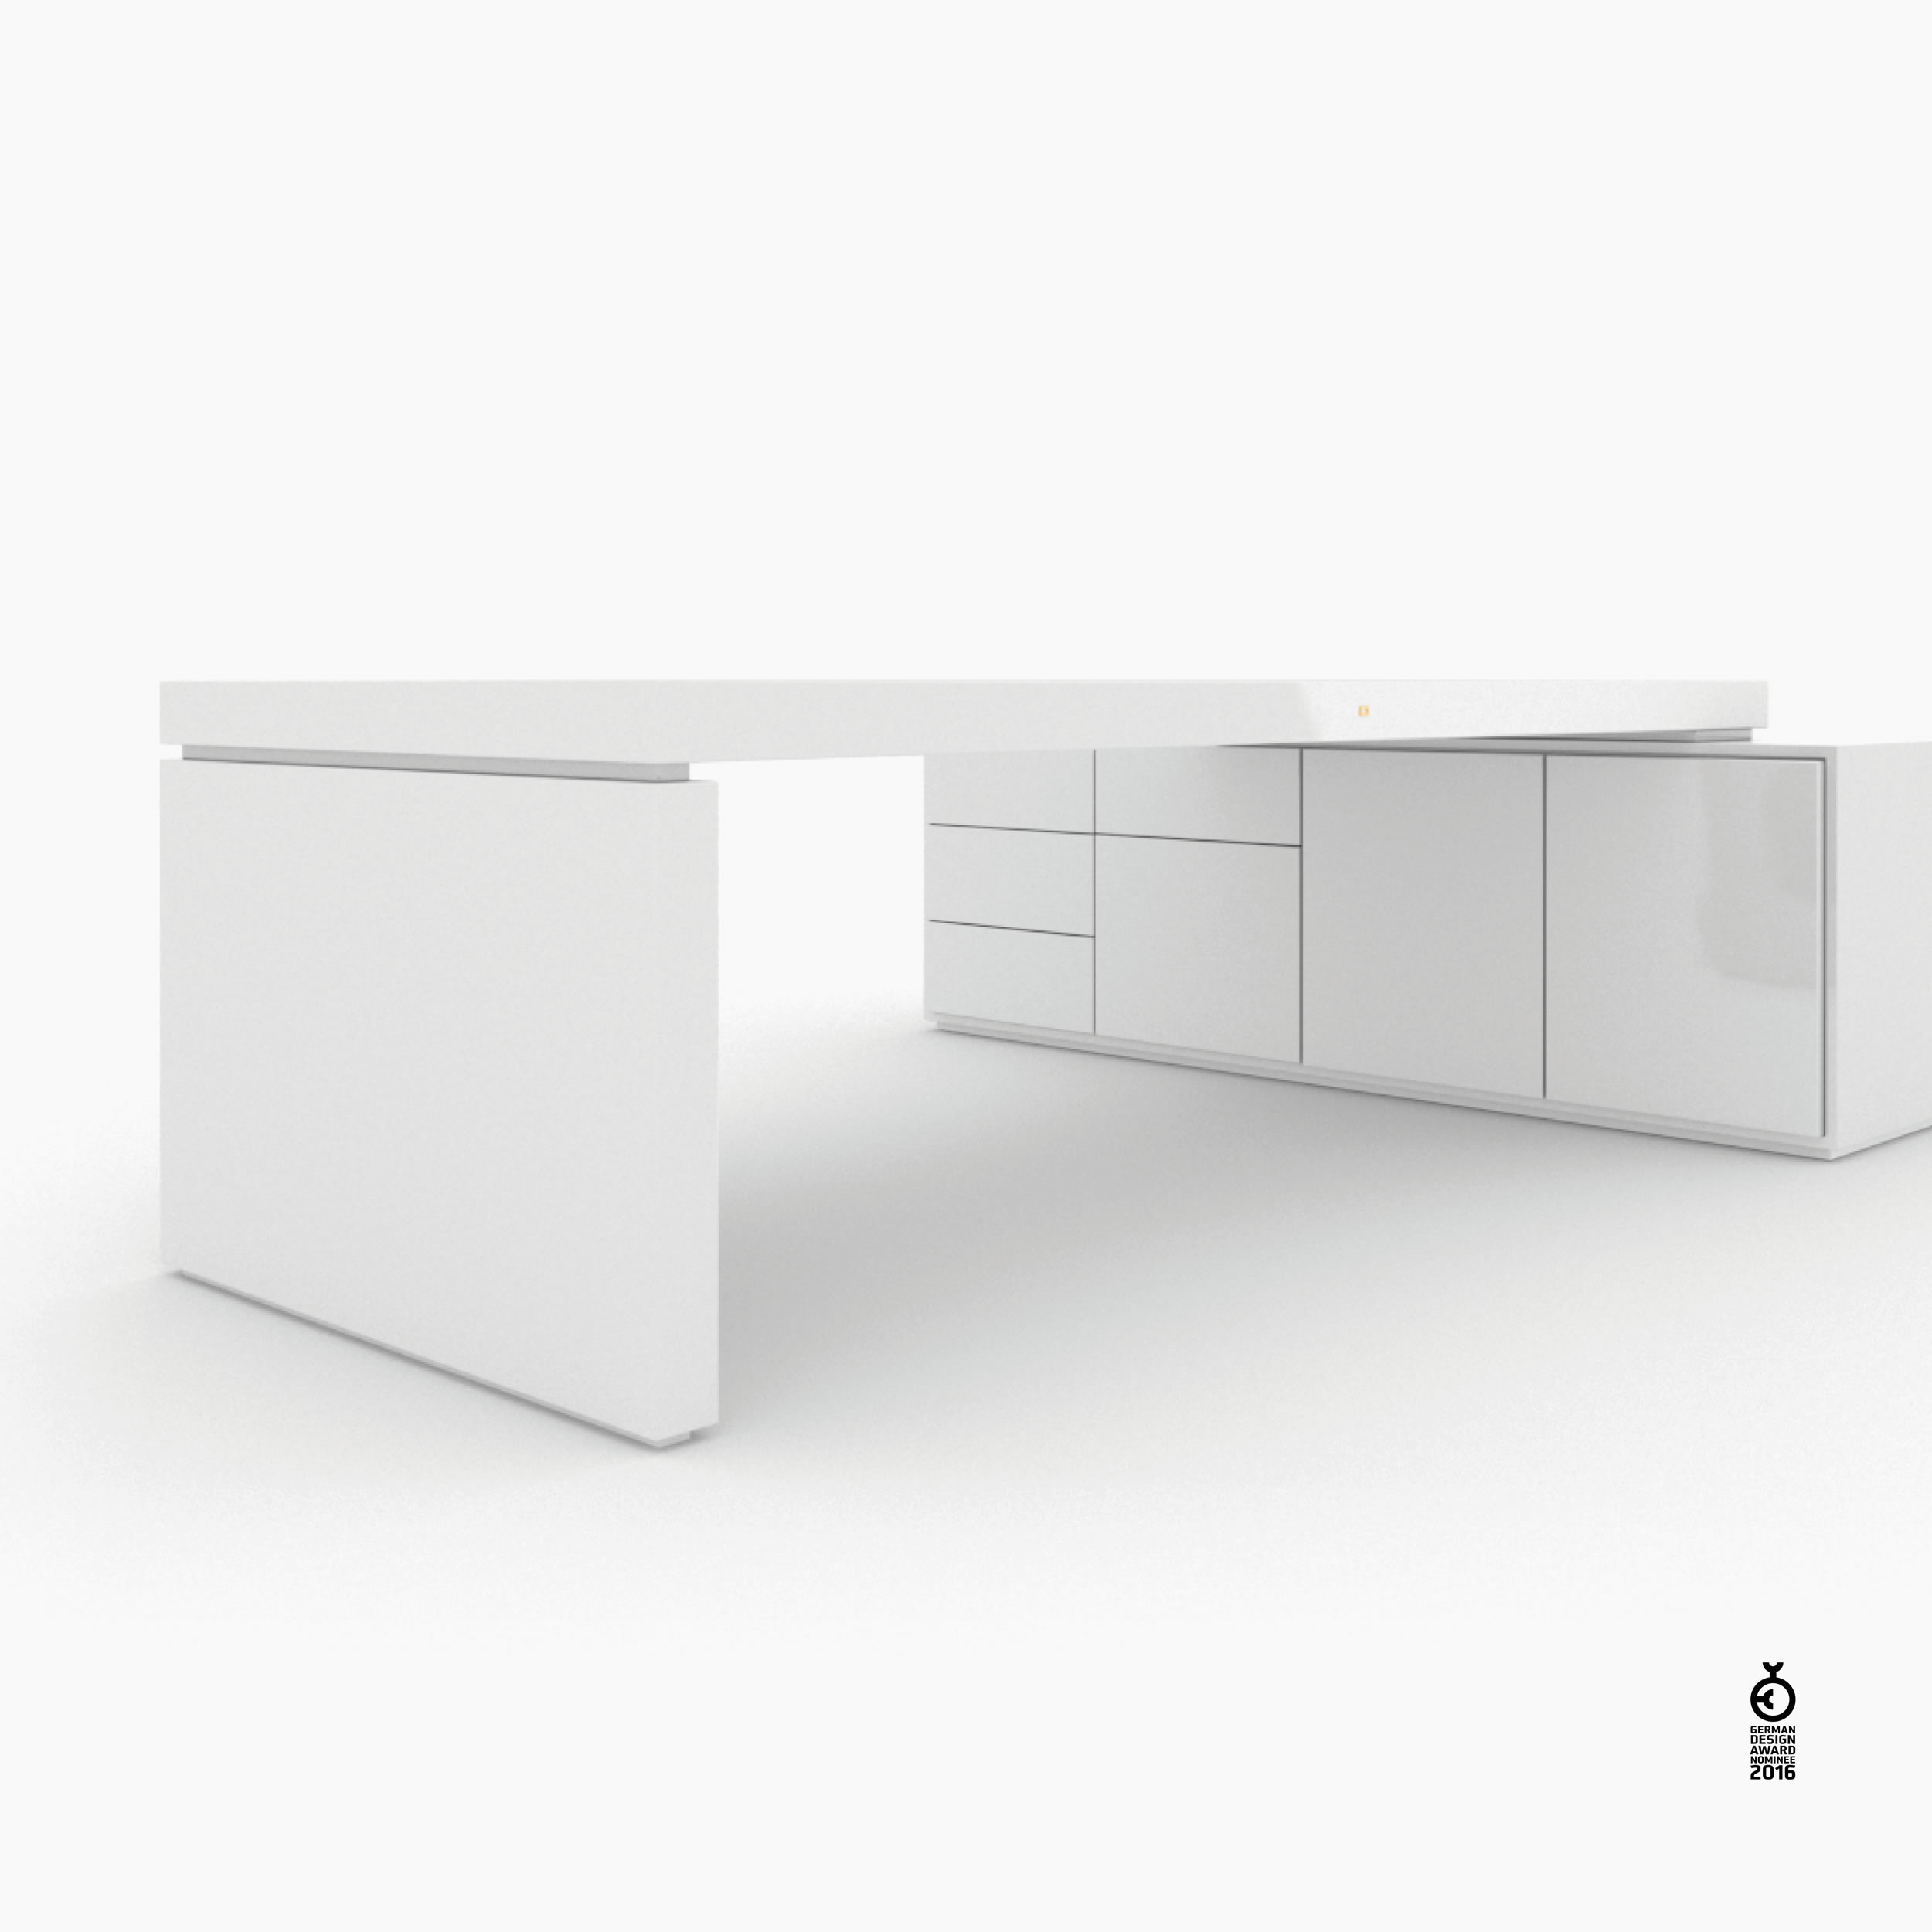 Schreibtisch scheiben und quader weiss designcrush Chefzimmer interior home Schreibtische FS 93 FELIX SCHWAKE